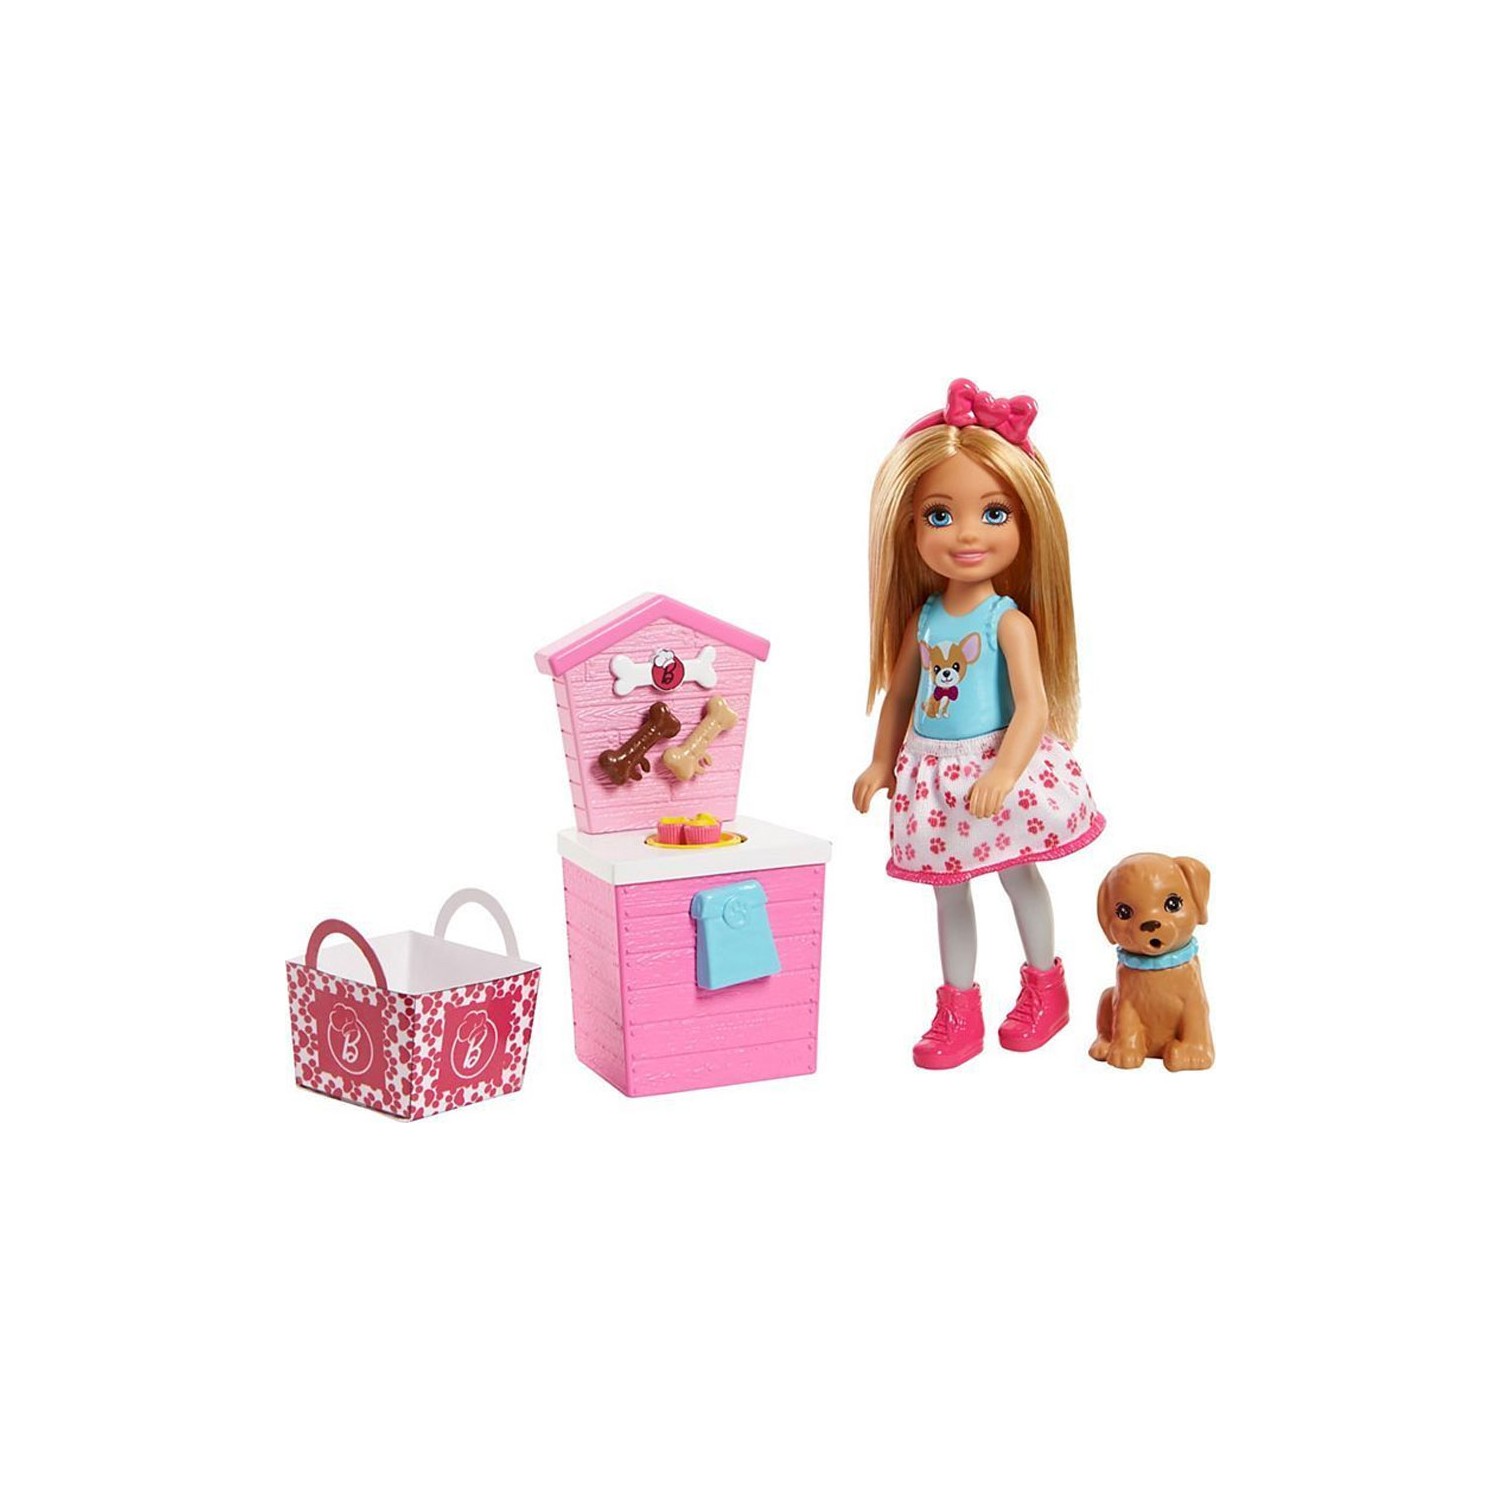 Игровой набор Barbie кухонный Barbie Chelsea FHP66 игровой набор для пикника barbie chelsea fdb32 ghv75